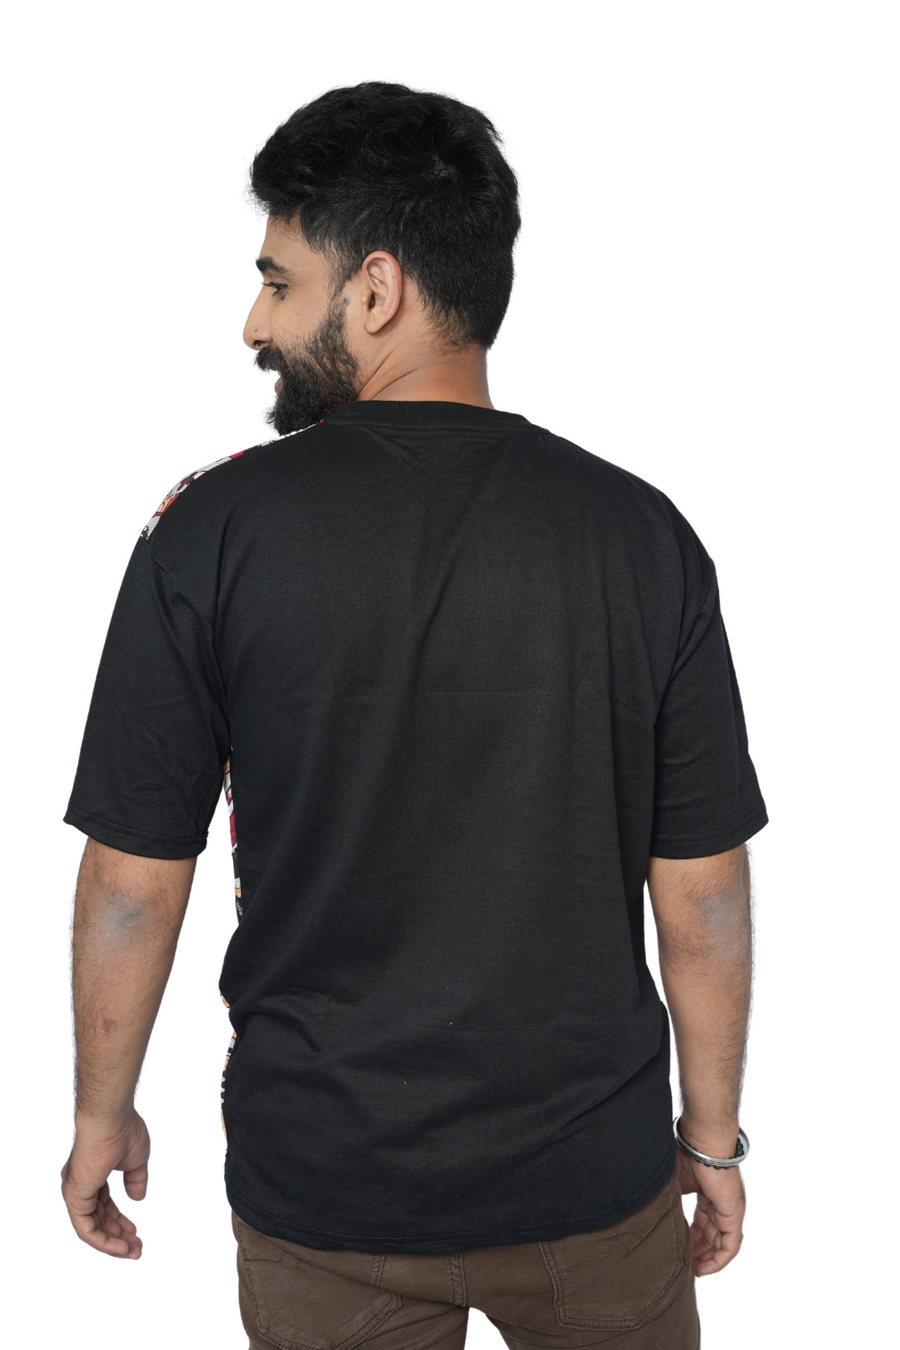 Unisex T-Shirt NomadNest PanacheUnis | Pure Cotton-Linen T-shirt